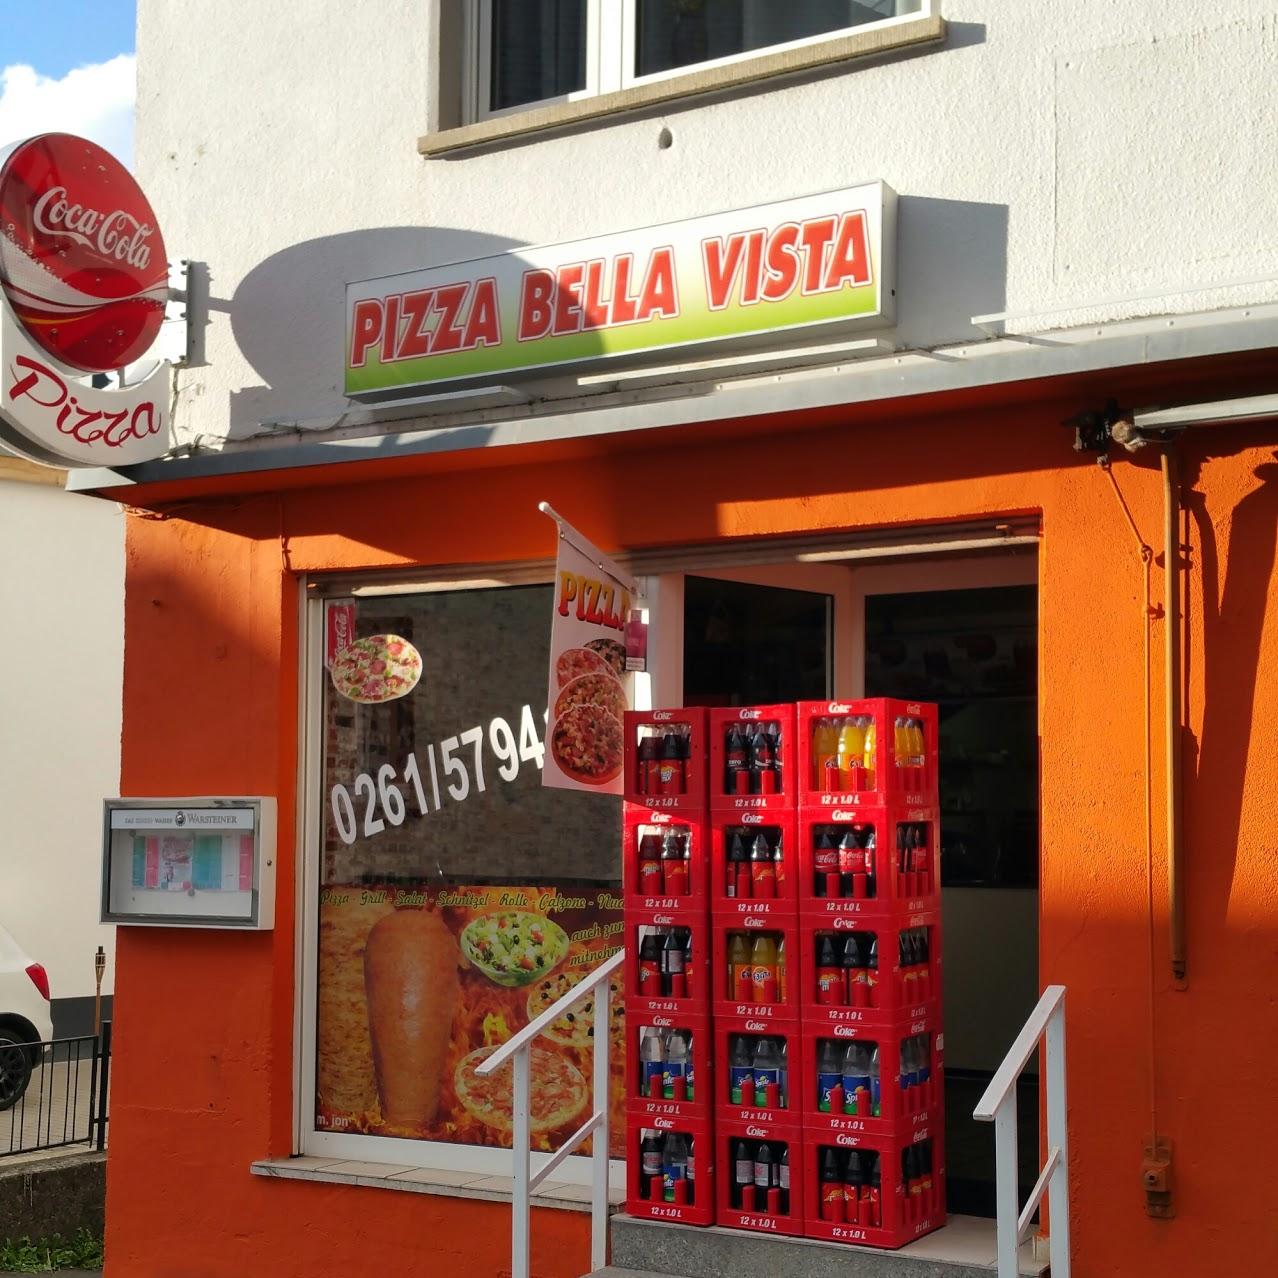 Restaurant "Pizza Bella Vista" in Koblenz